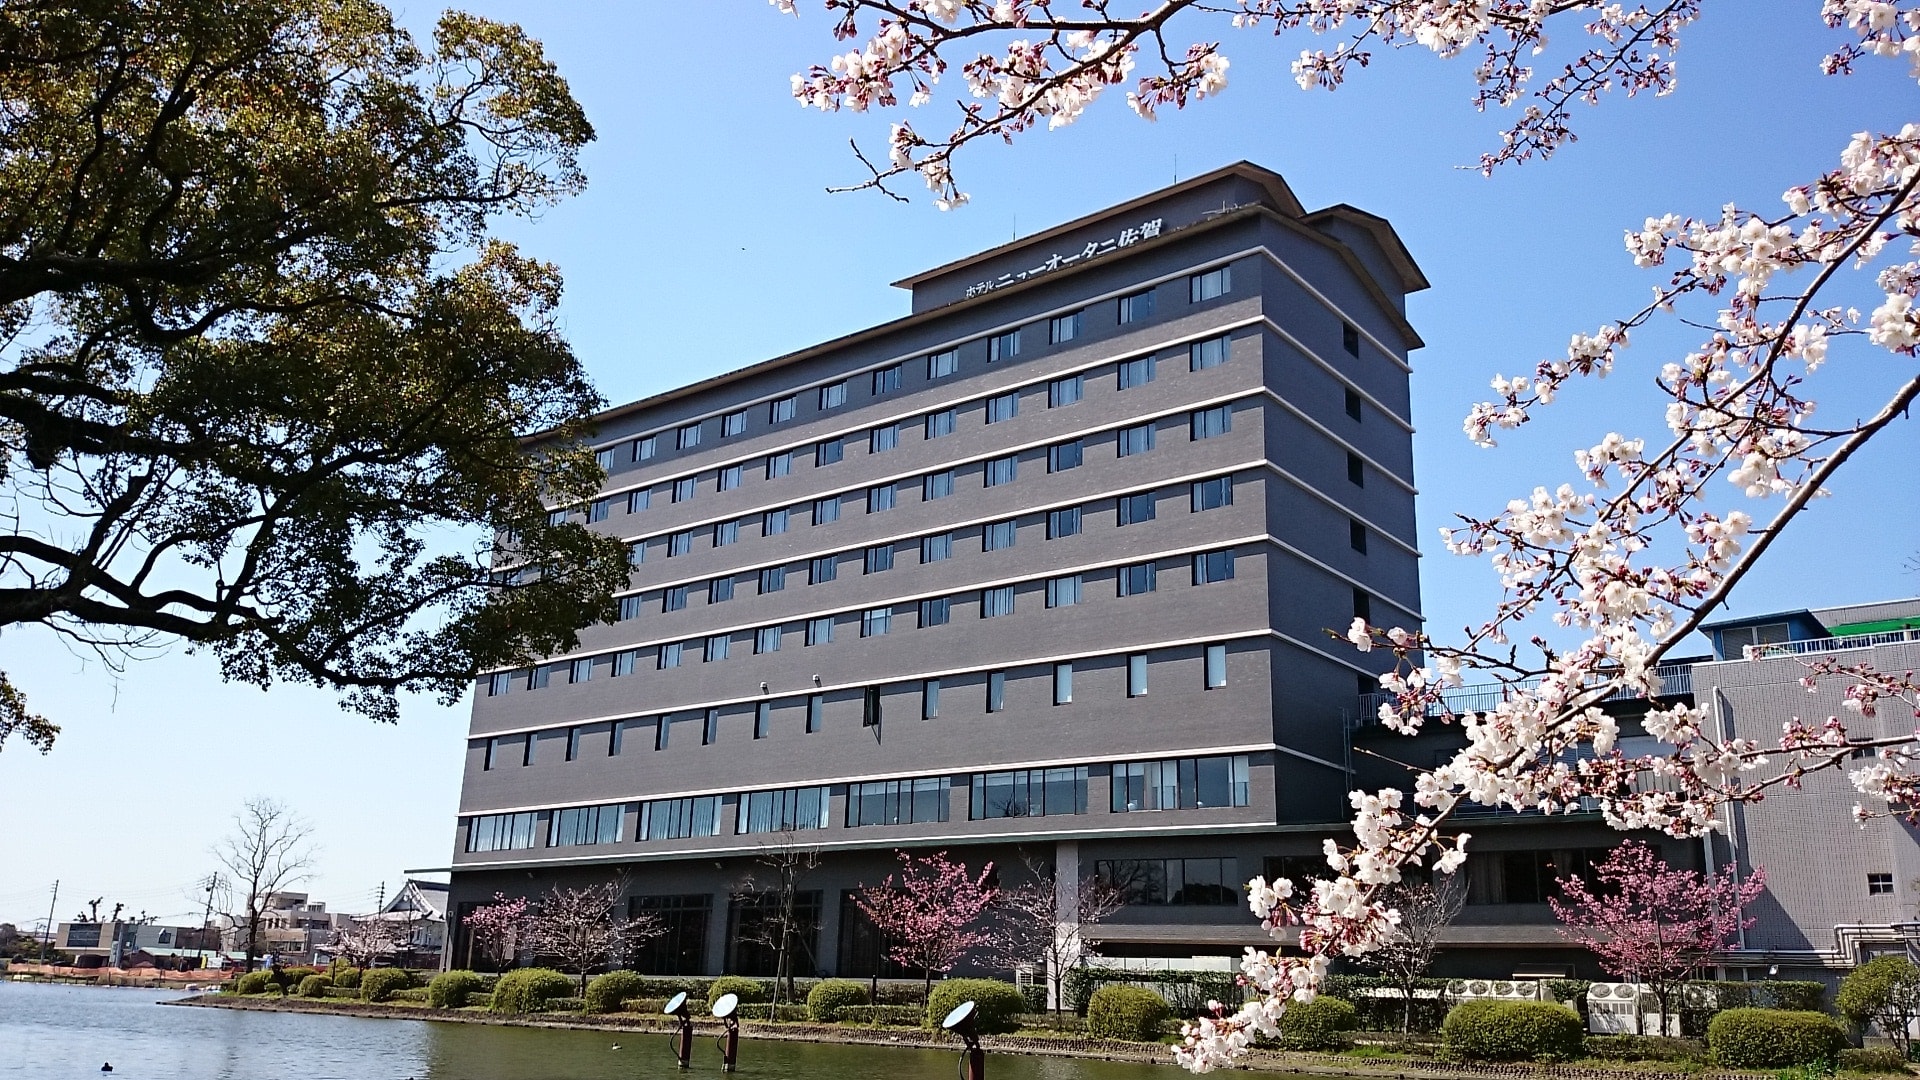 ニューオータニ 佐賀 ホテル ăăăŤăăĽăźăŞăźăżăä˝čł